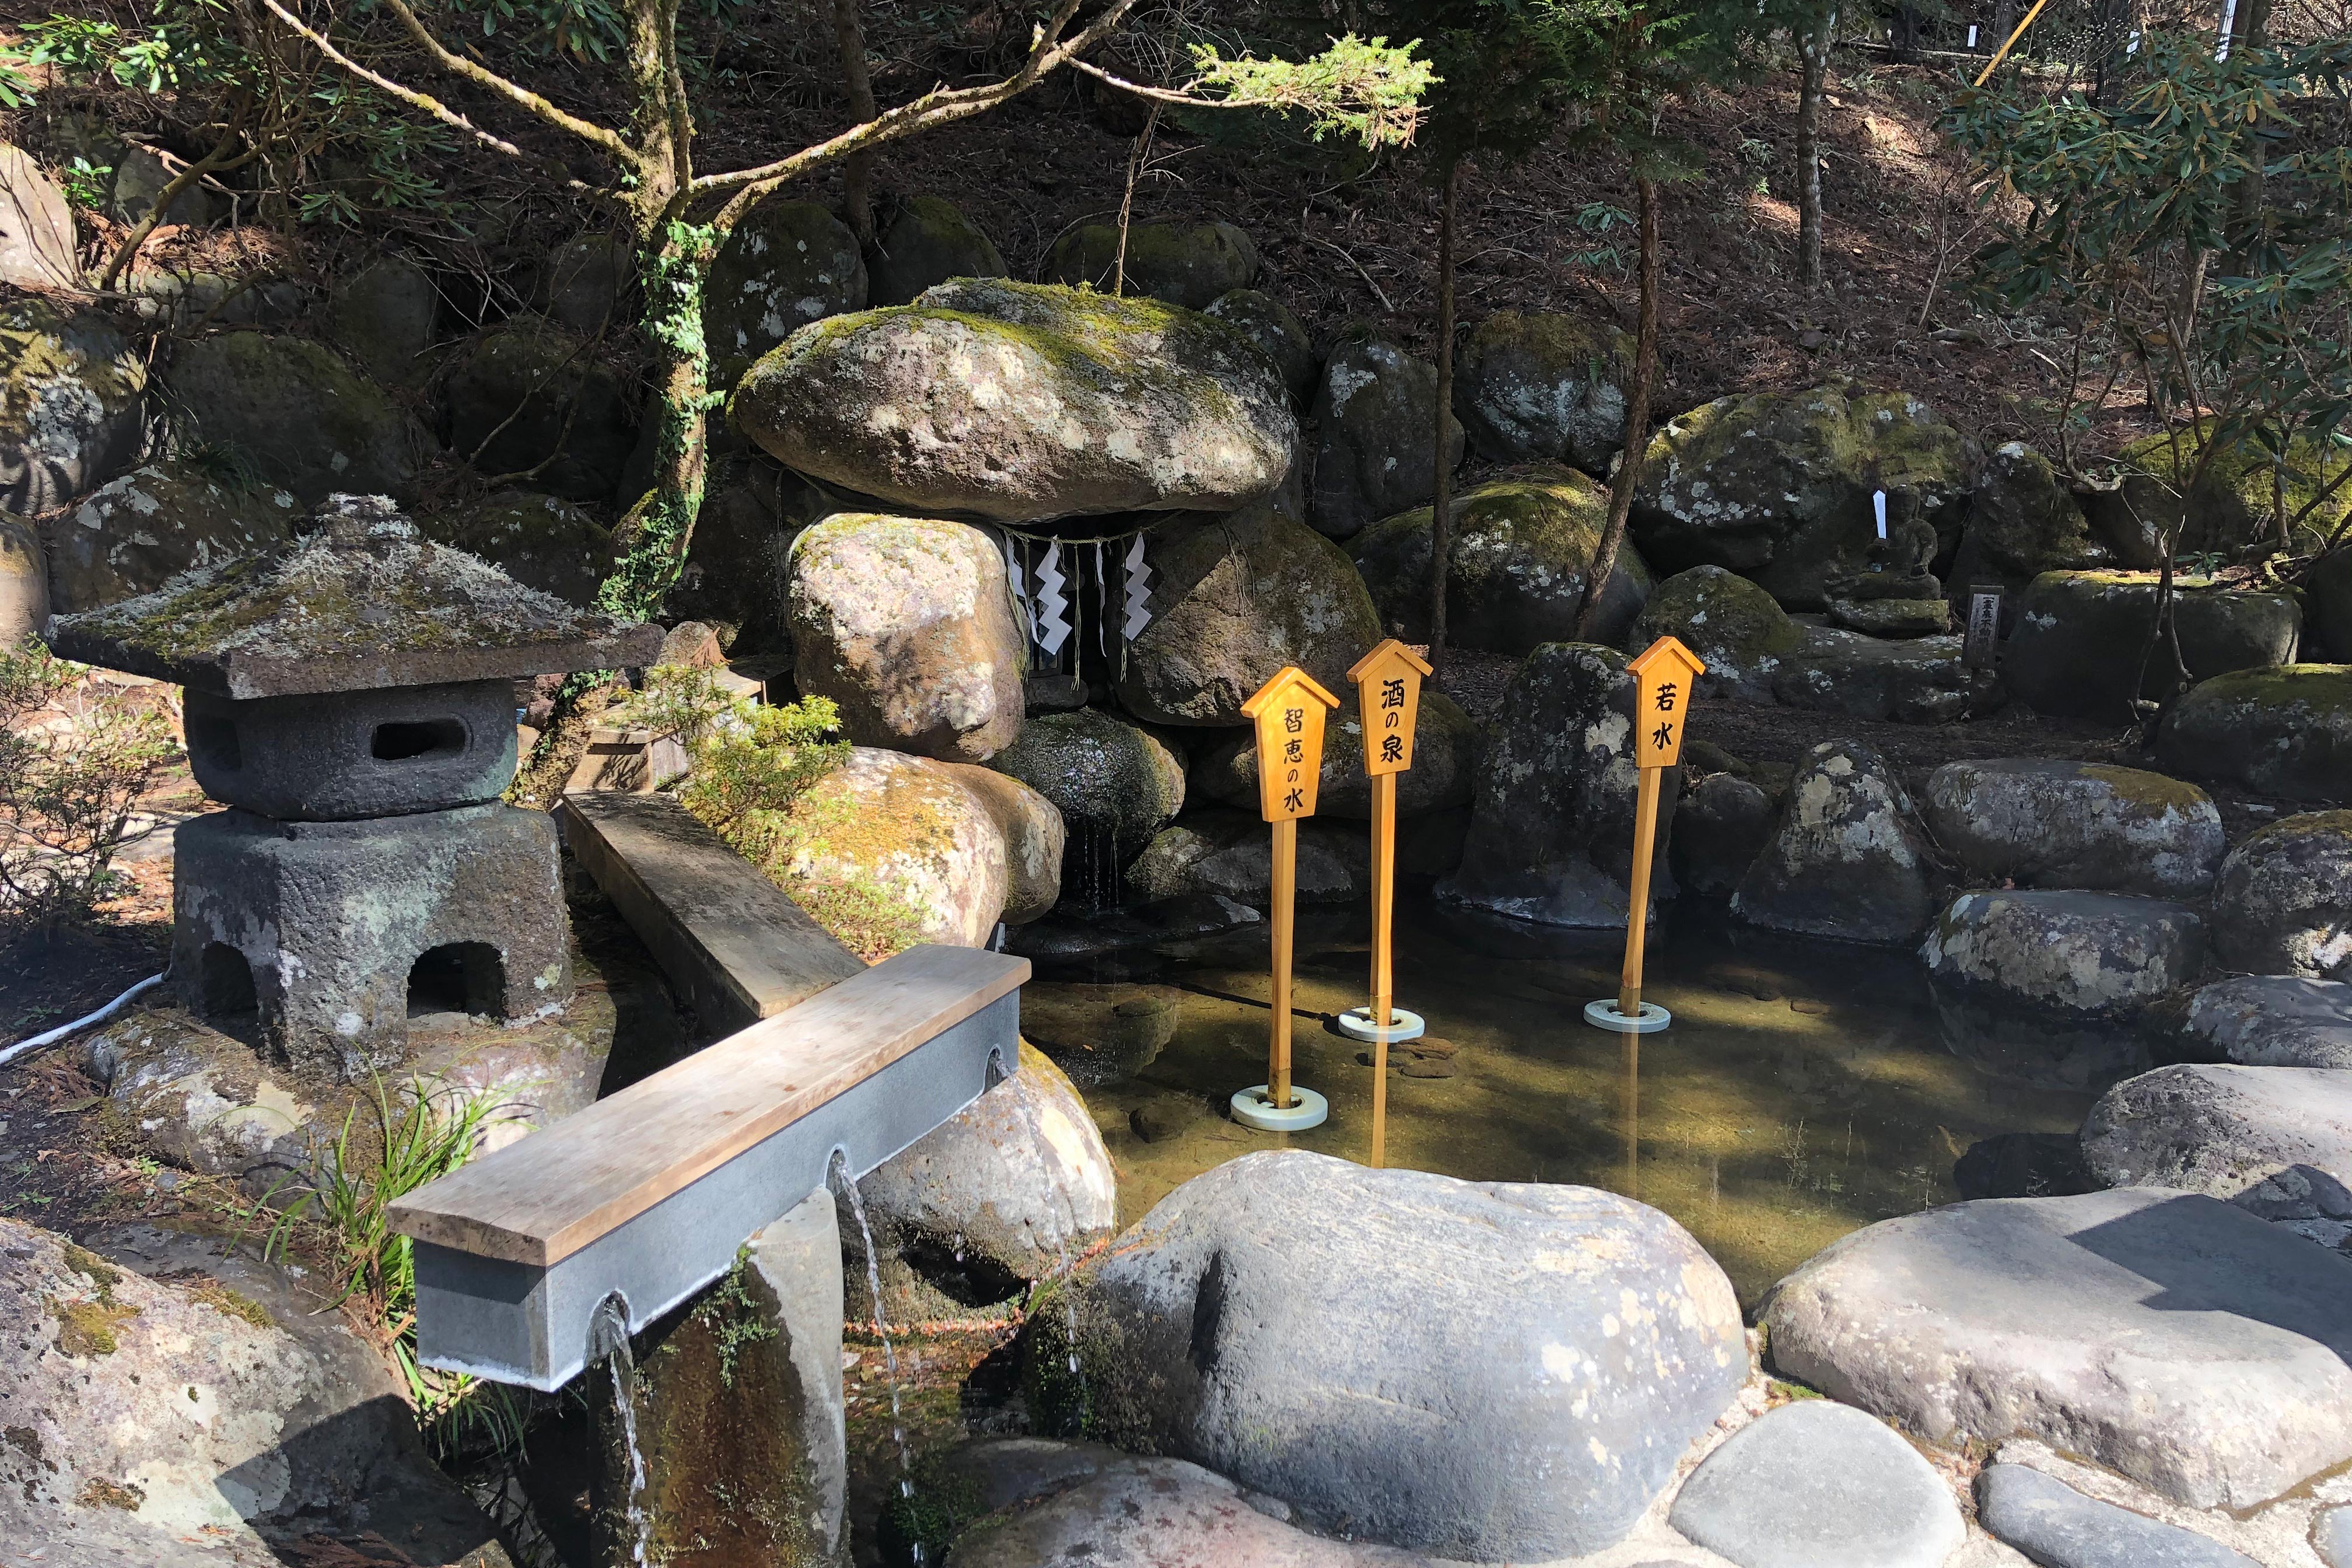 此泉水引自二荒山神社周边的两处圣泉。<br /><br />一处是本殿背后的恒灵山涌出的“药师灵水”，据说能治疗眼疾。<br /><br />还有一处是“酒泉”。泉眼位于此地以西约1公里的泷尾神社附近。<br /><br />用“酒泉”之水酿造的日本酒，其味道也更加美味特别。每年春秋季节，全国的酿酒业者都会到这里来取水作为酿酒的种水。本社的入口附近放置的酒桶，就是这些酿酒业者的敬奉之物。<br /><br />二荒灵泉的水作为“回春泉”也广为人知，祈求健康和永保青春的参拜者常常到这里打水饮用。